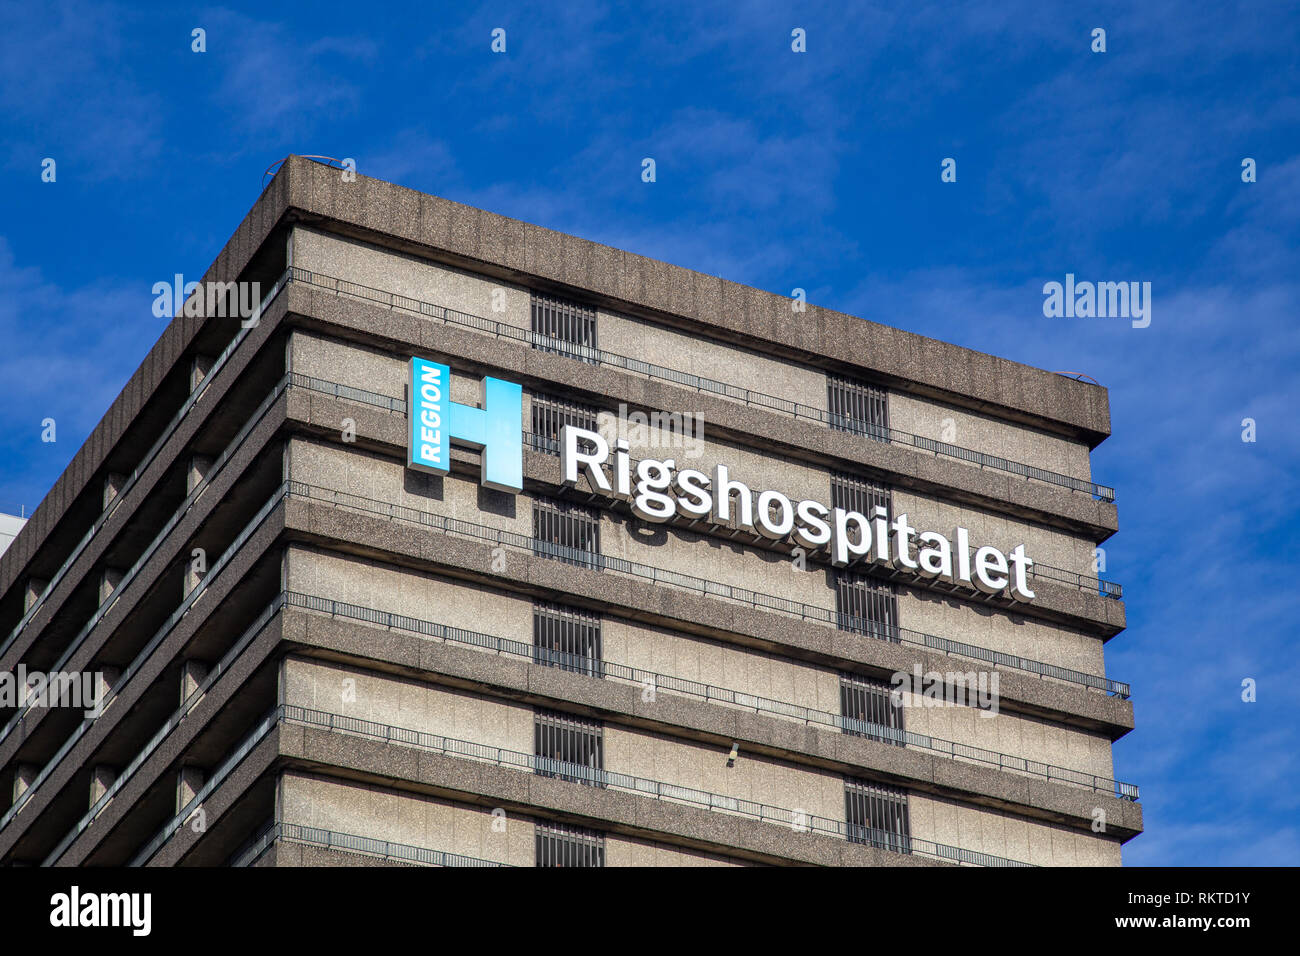 Rigshospitalet, hospital in Copenhagen, Denmark Stock Photo